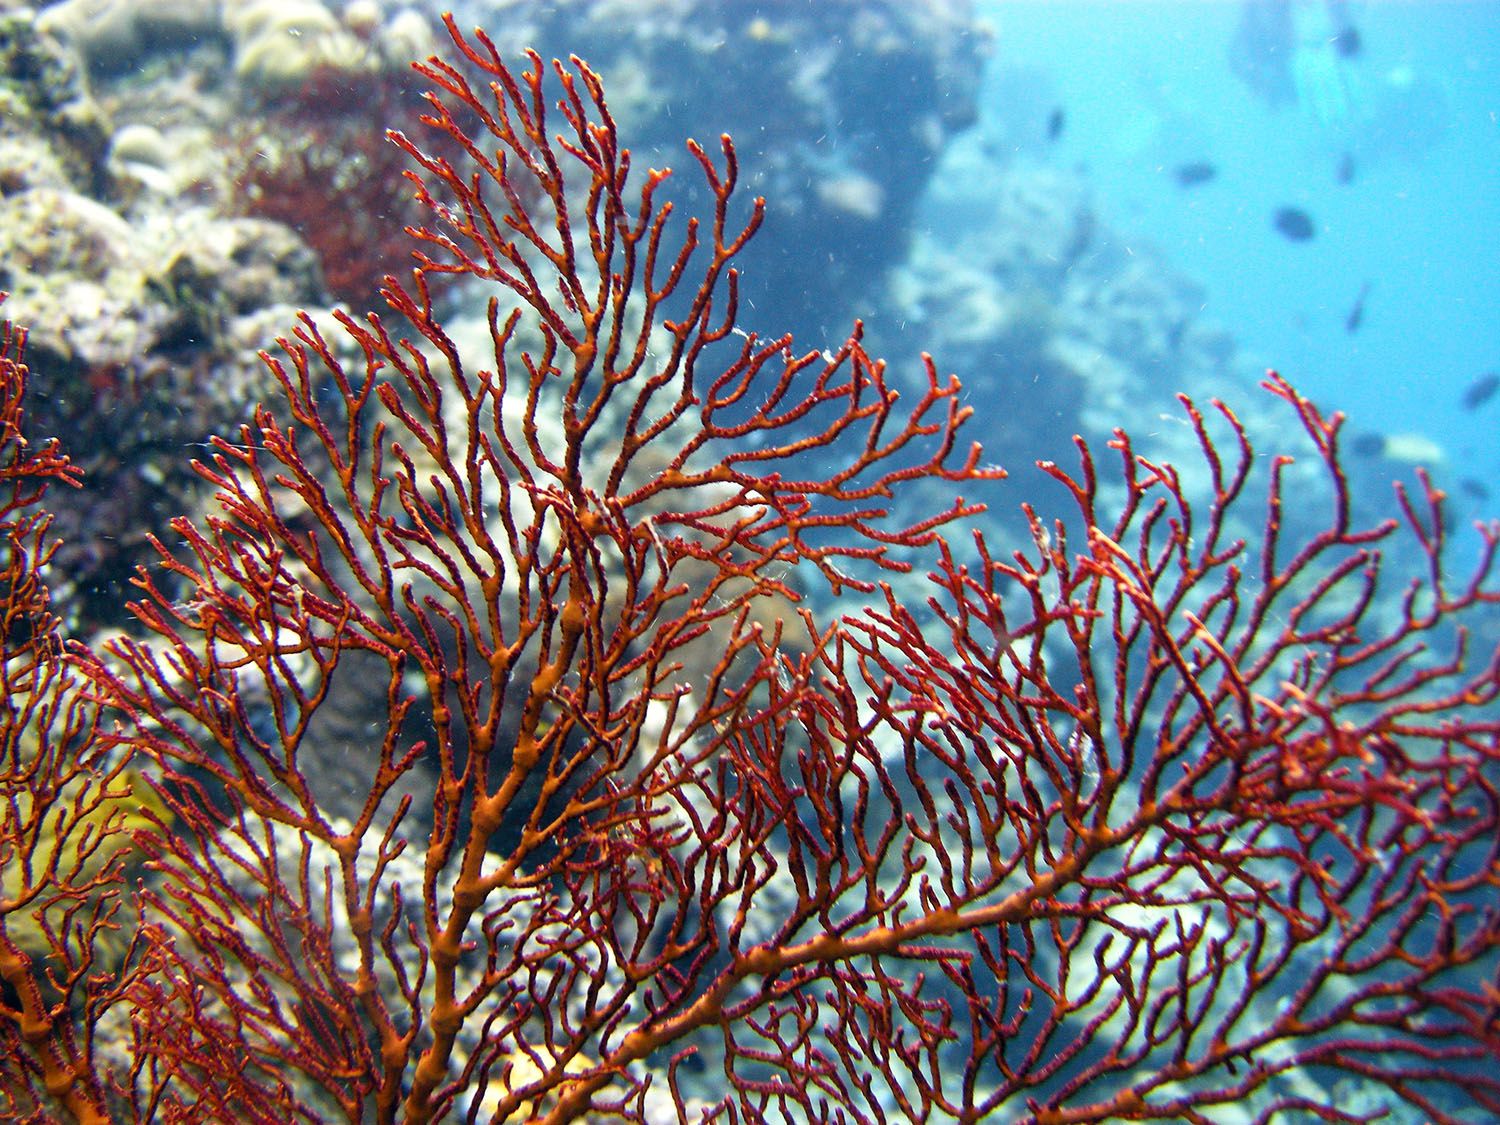 red gorgonian fan coral